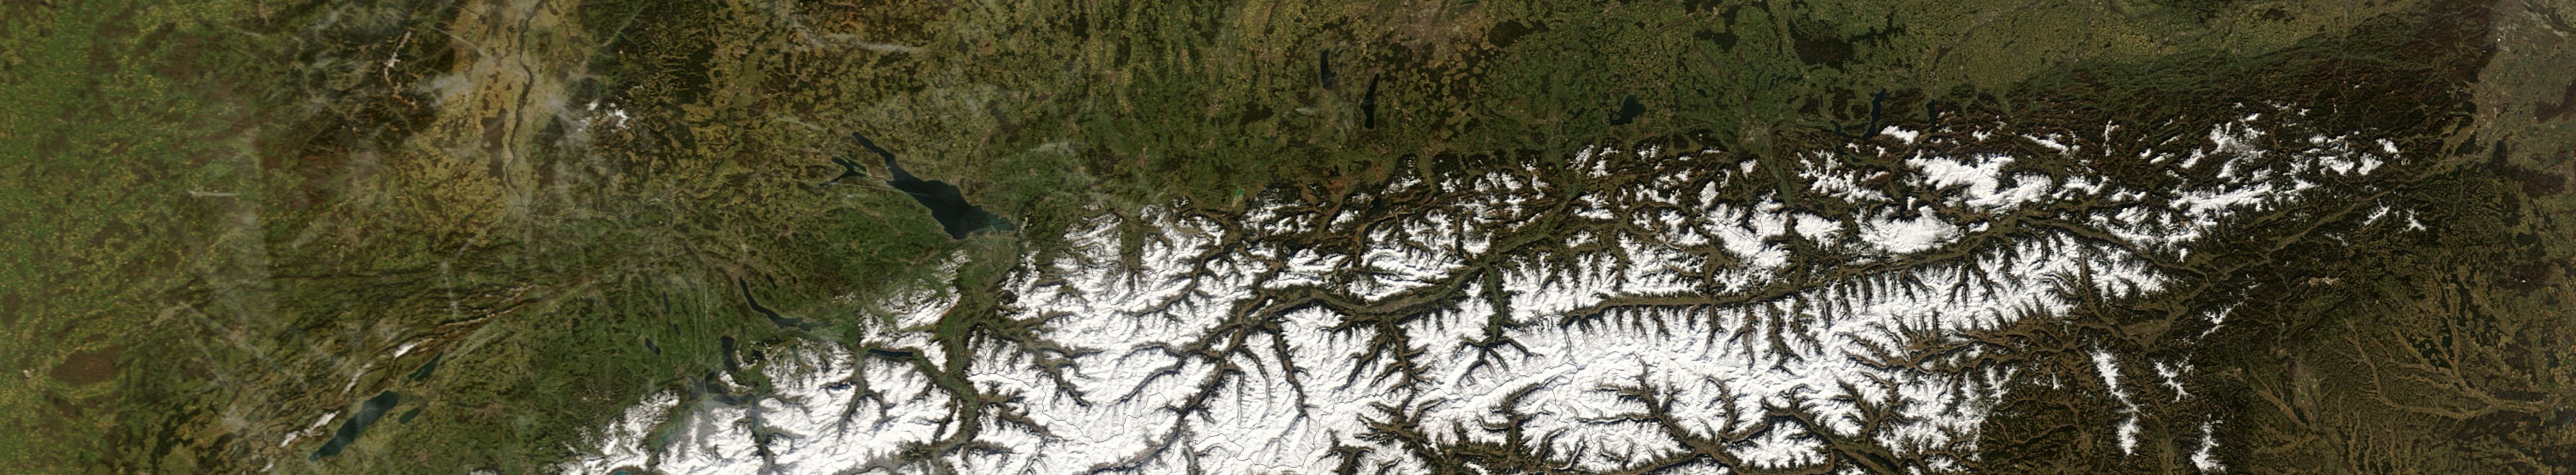 Die Alpen aus Sicht eines Satelliten